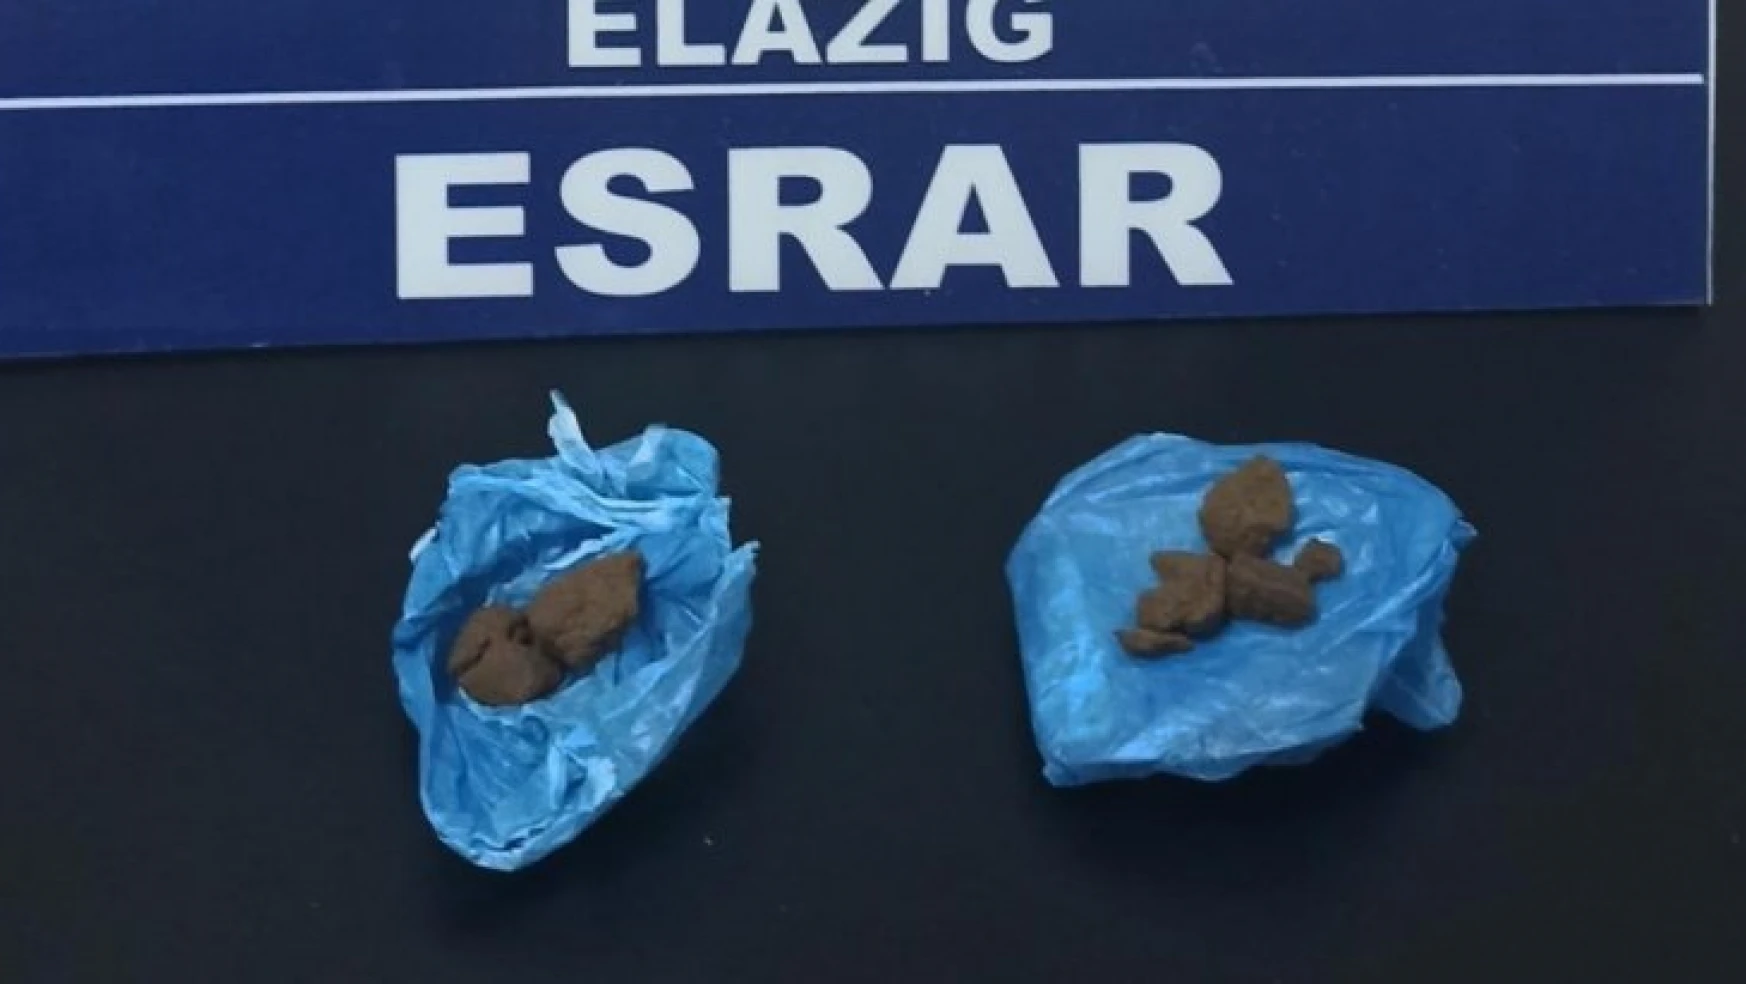 Elazığ'da uyuşturucu ile mücadele 3 şüpheli hakkında işlem yapıldı